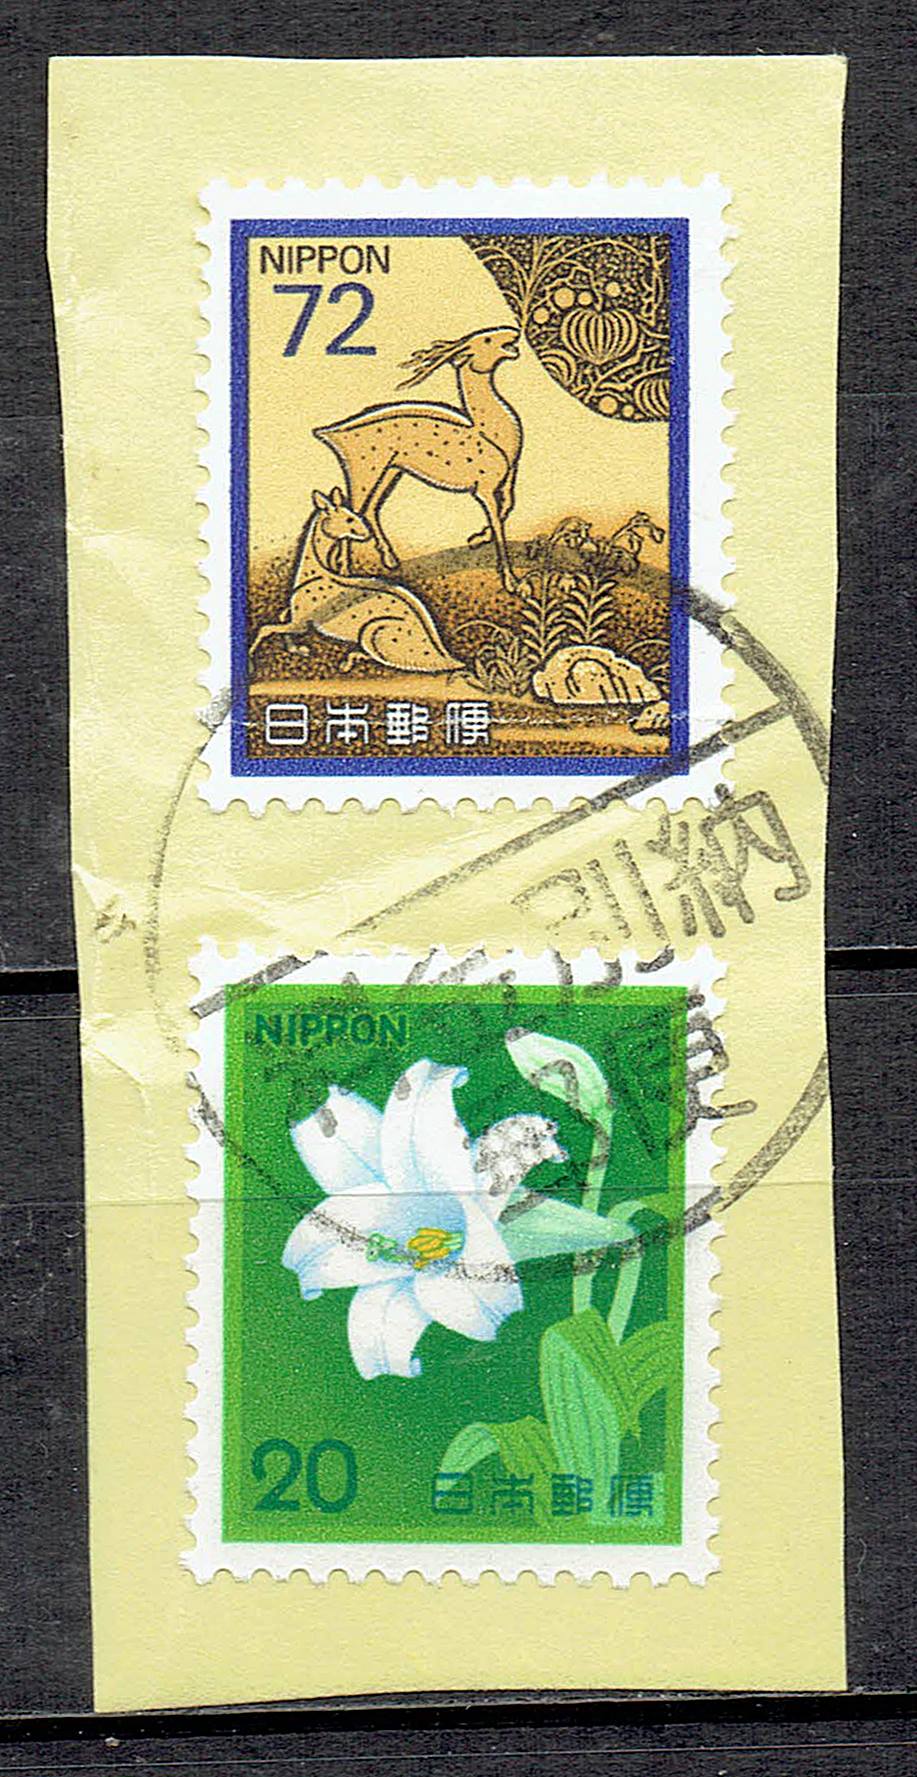 切手に料金別納印が押印された実逓使用例